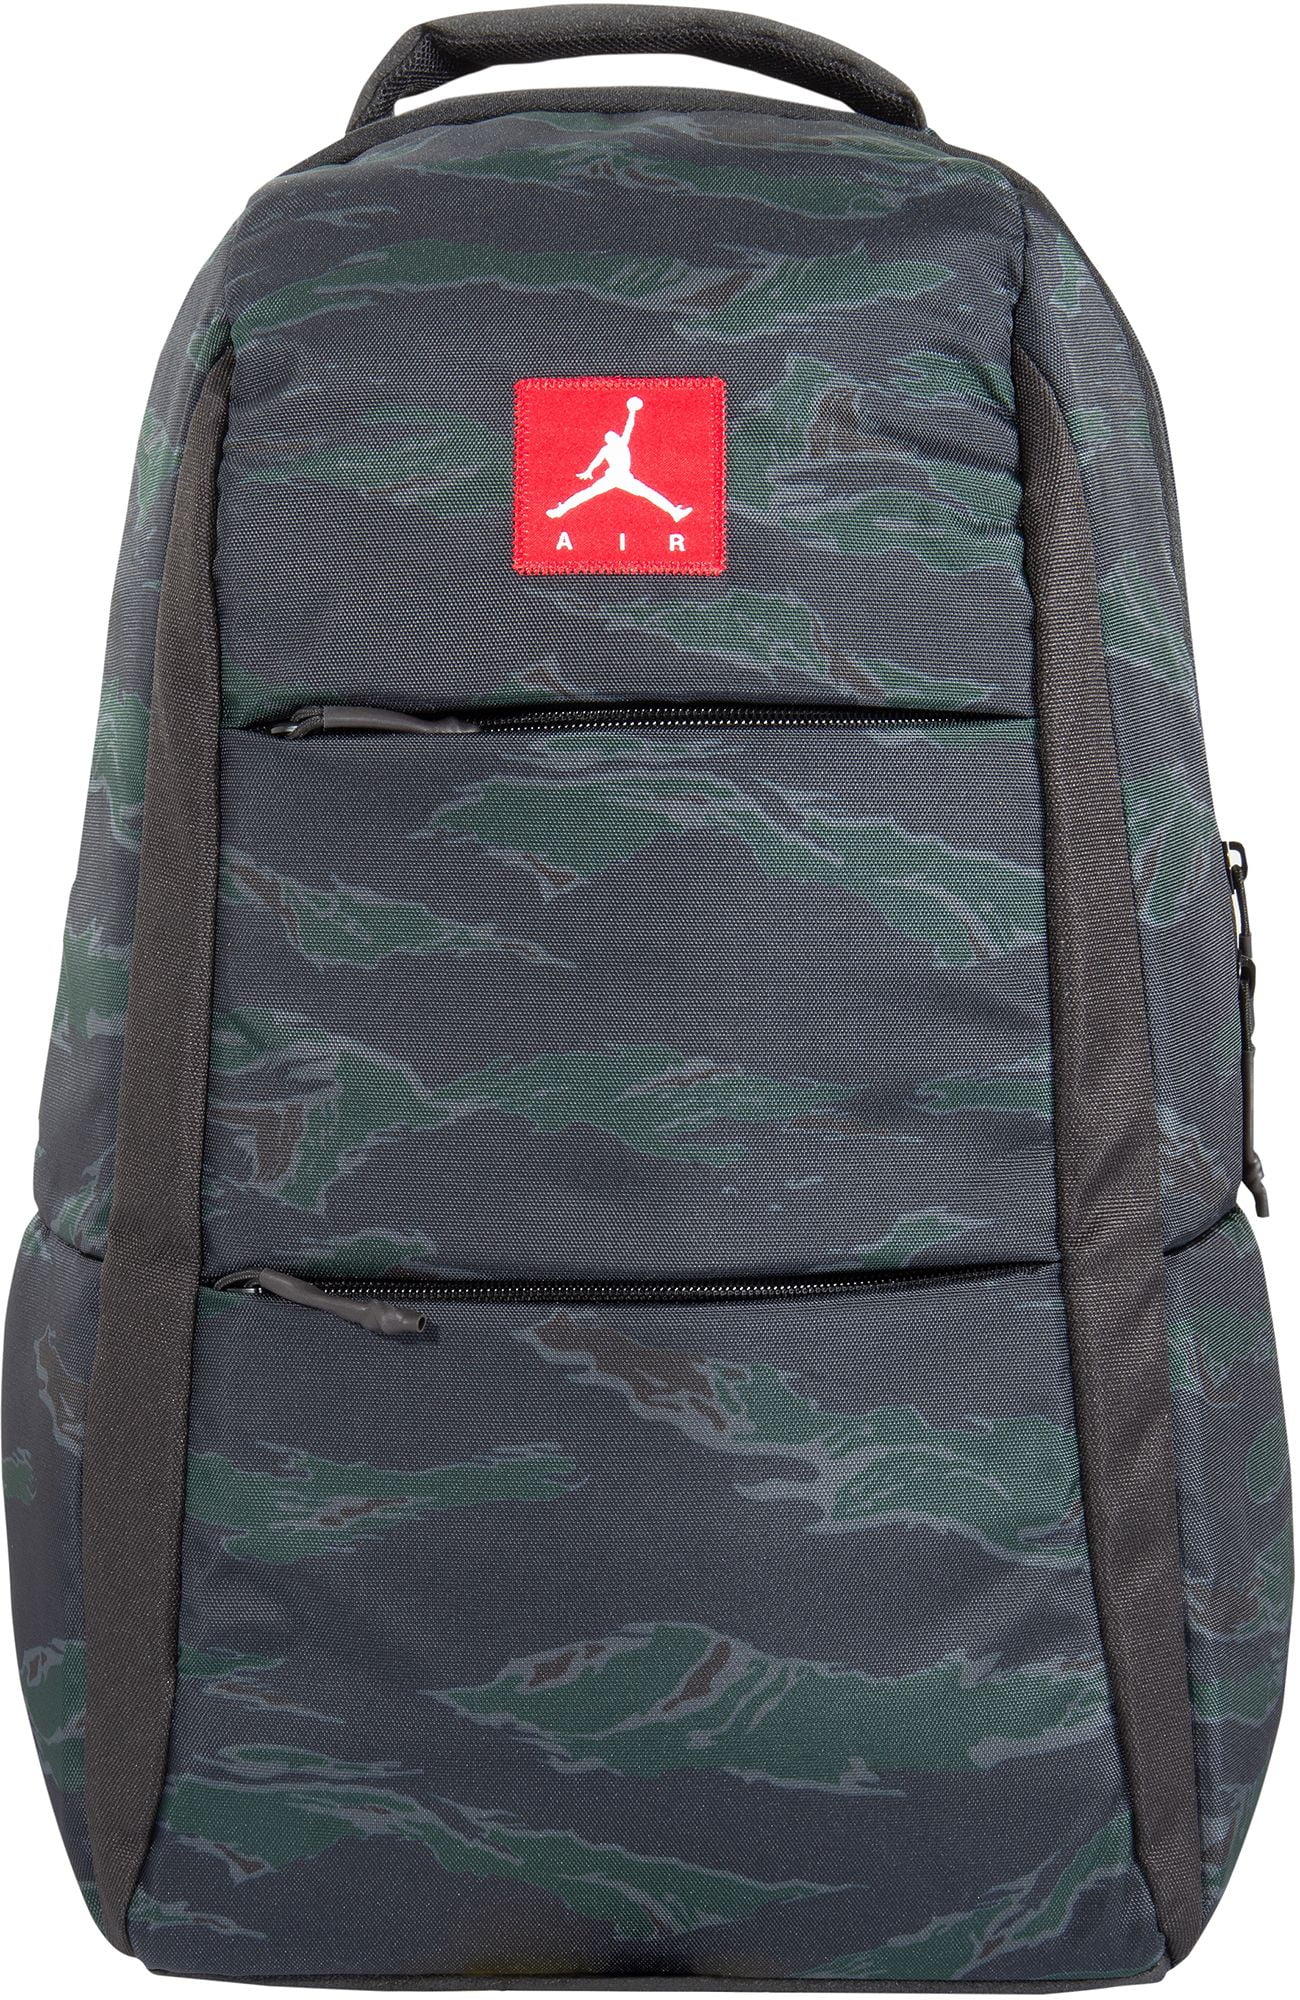 jordan alias backpack